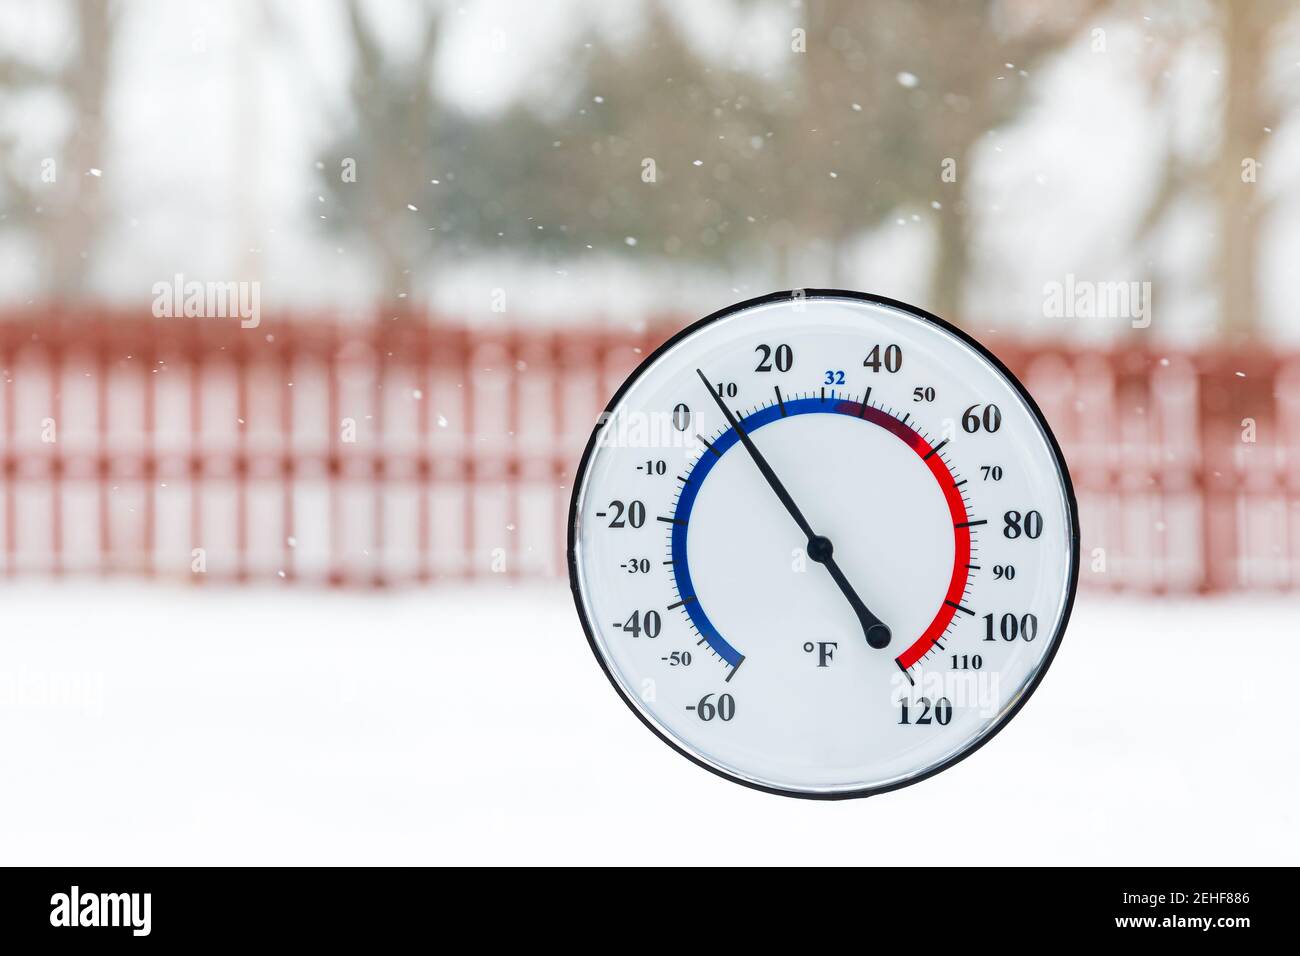 Thermometer zeigt kalte Temperatur während Winter Schneesturm. Konzept von frostigen Wetter, Kälte und Sicherheit im Winter Stockfoto